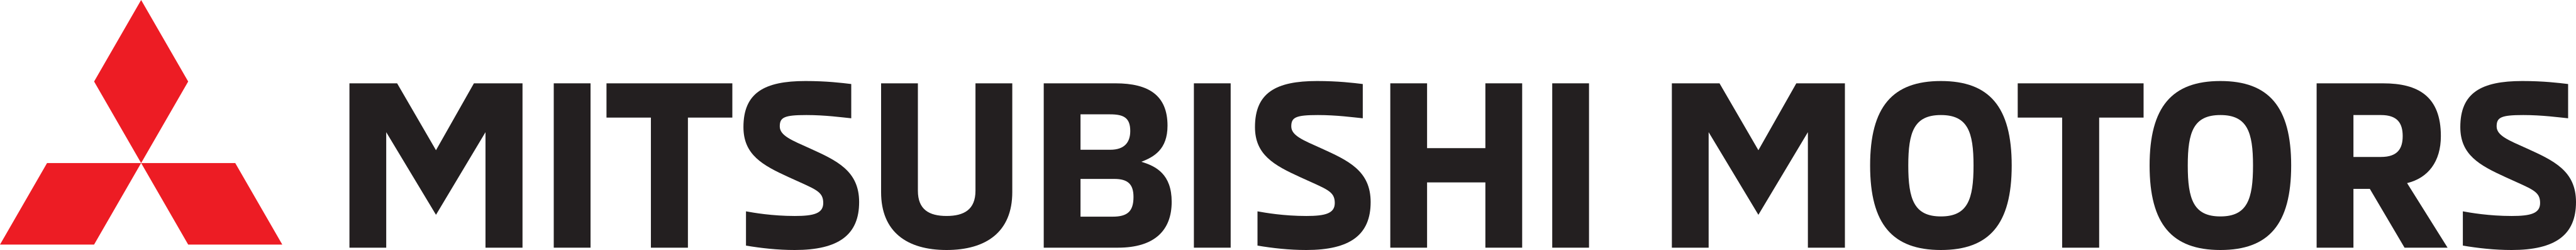 mitsubish logo 1 - Mitsubishi Motors Logo